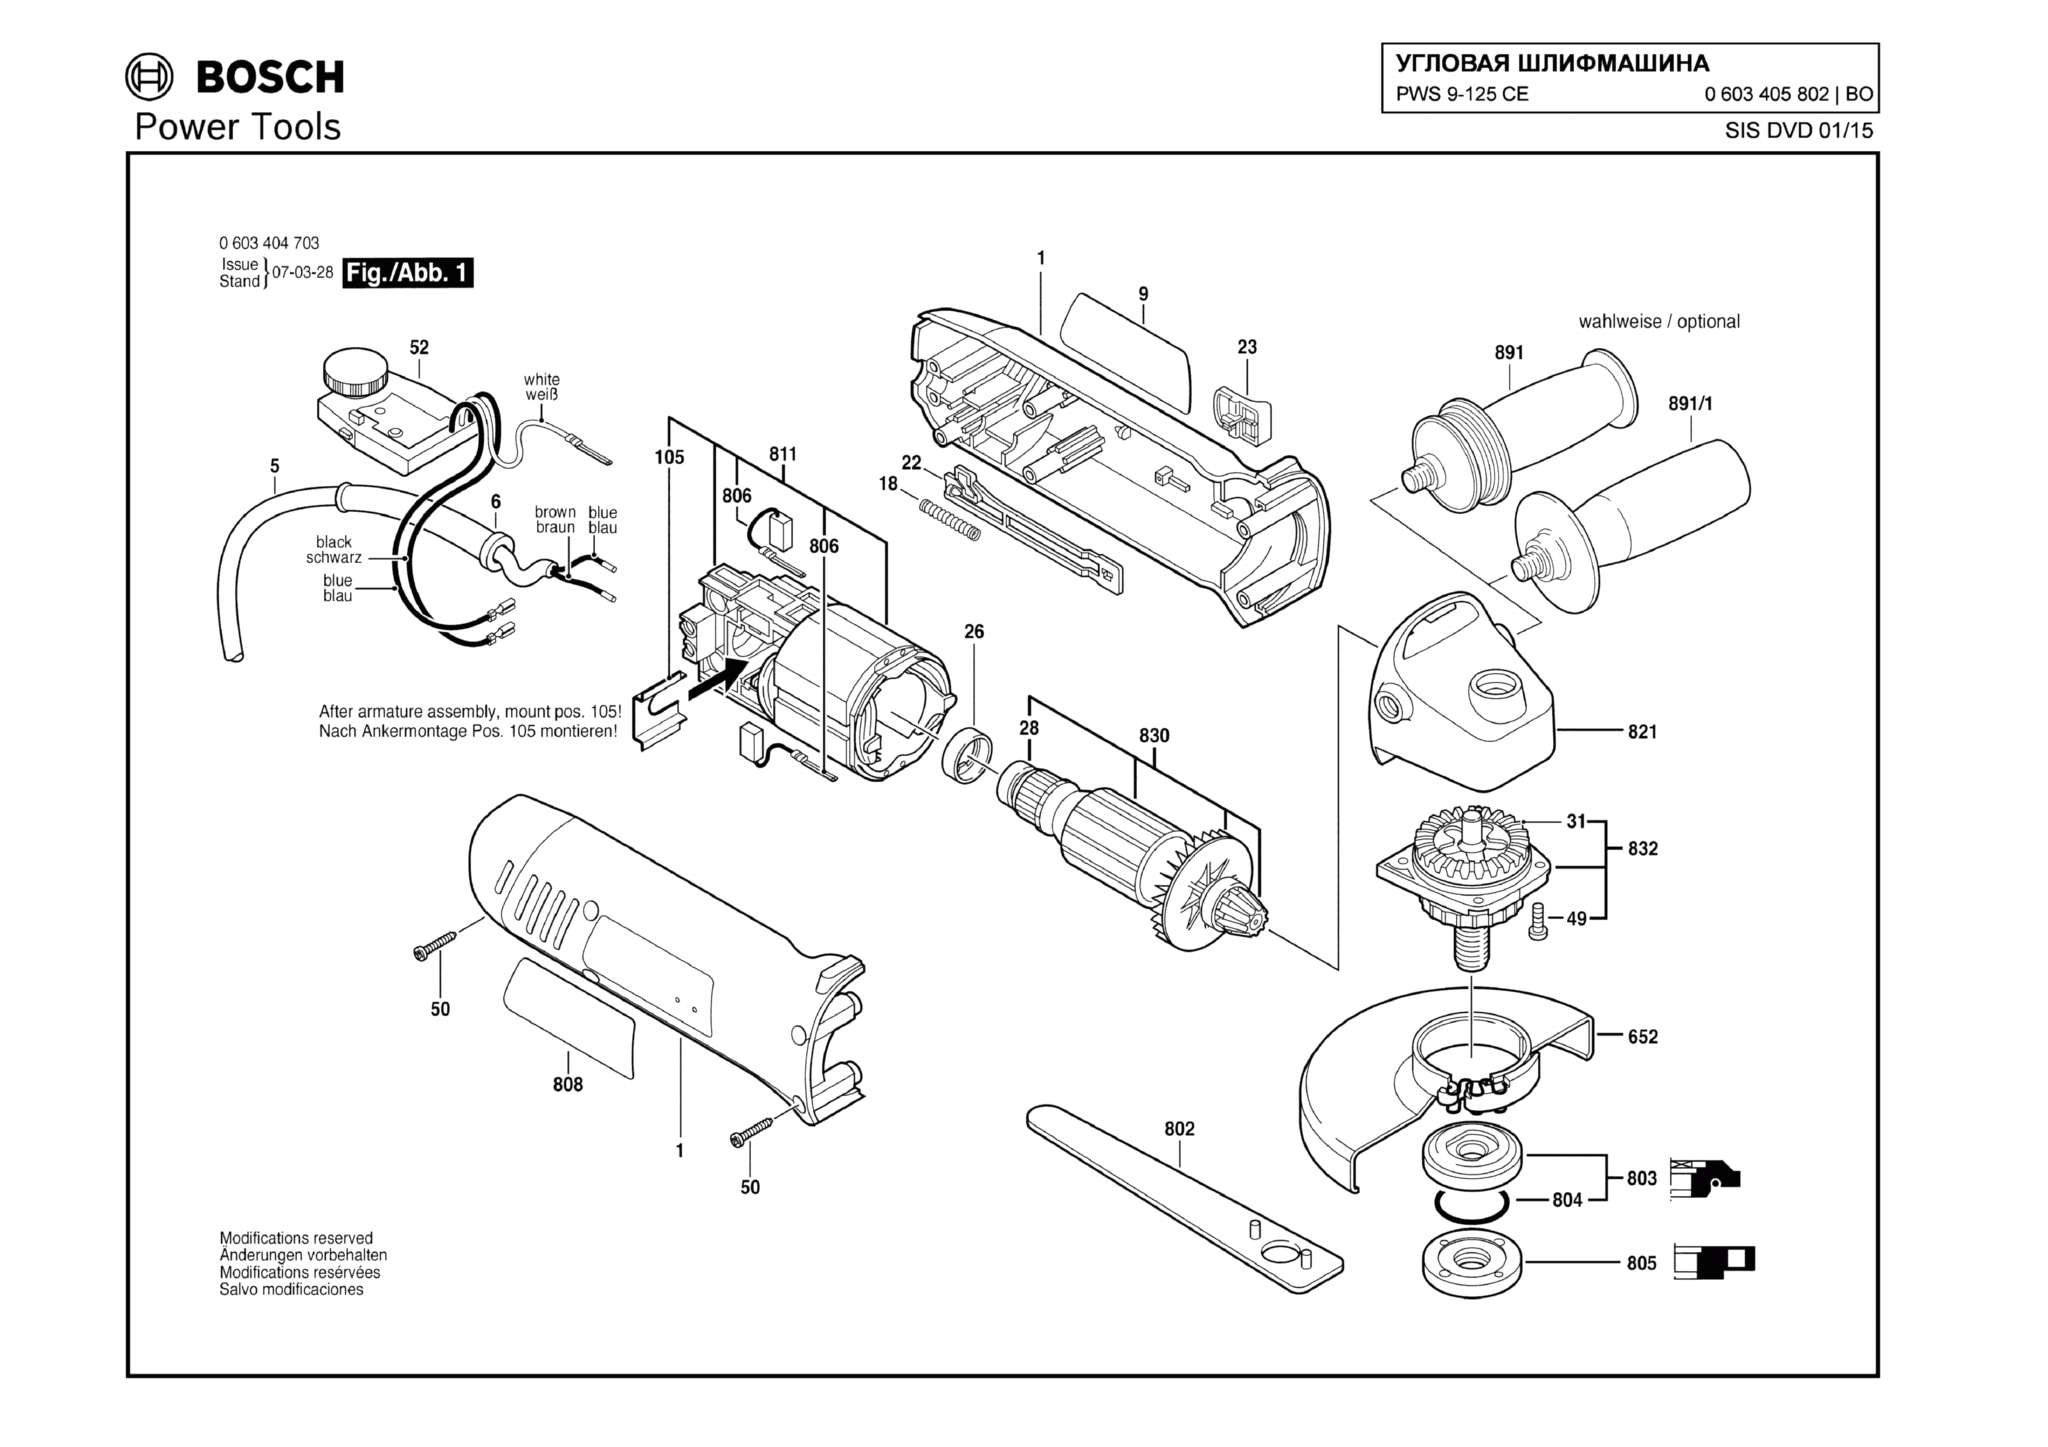 Запчасти, схема и деталировка Bosch PWS 9-125 CE (ТИП 0603405802)